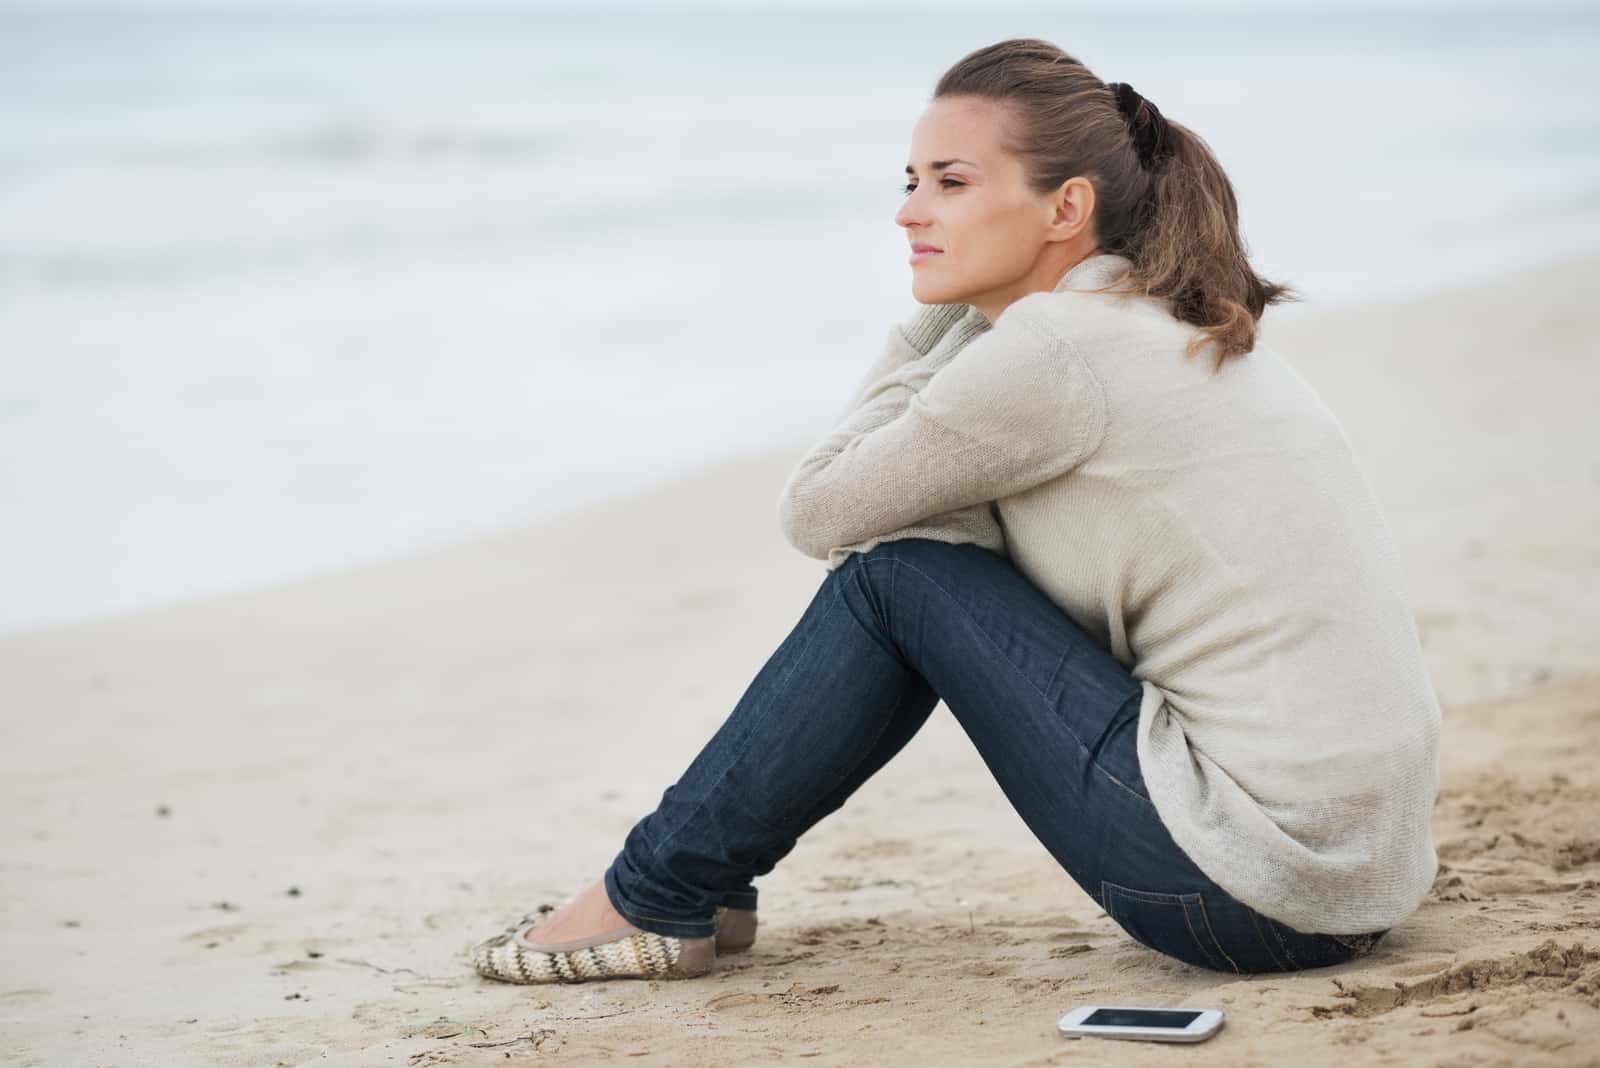 la femme est assise seule sur la plage